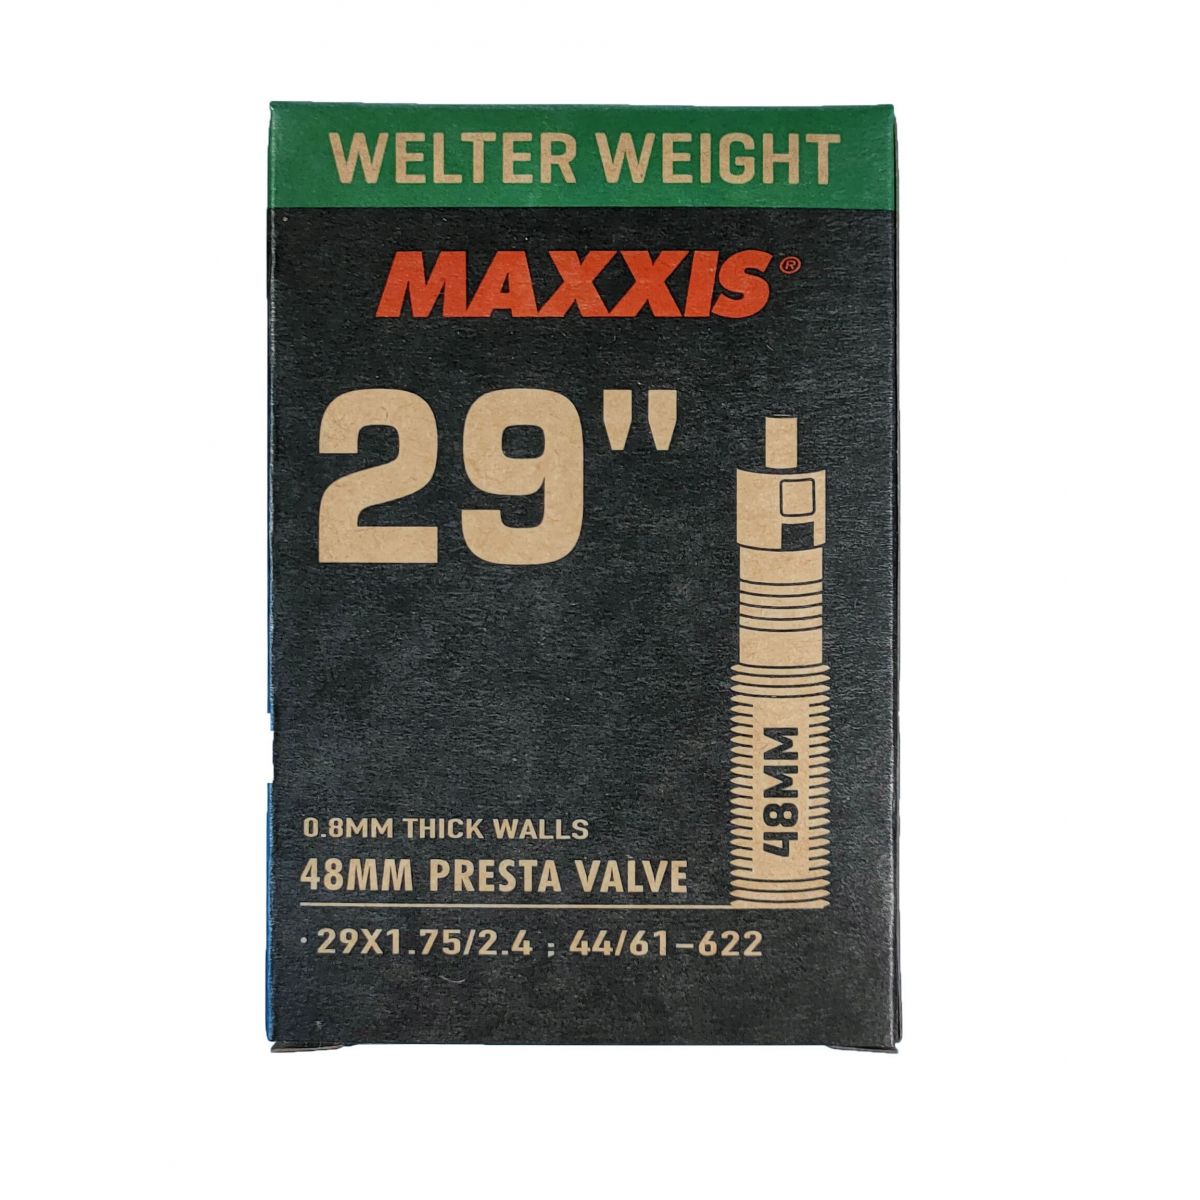 Cámara de bicicleta Maxxis Welter Weight neumático de  29" 1.75/2.40